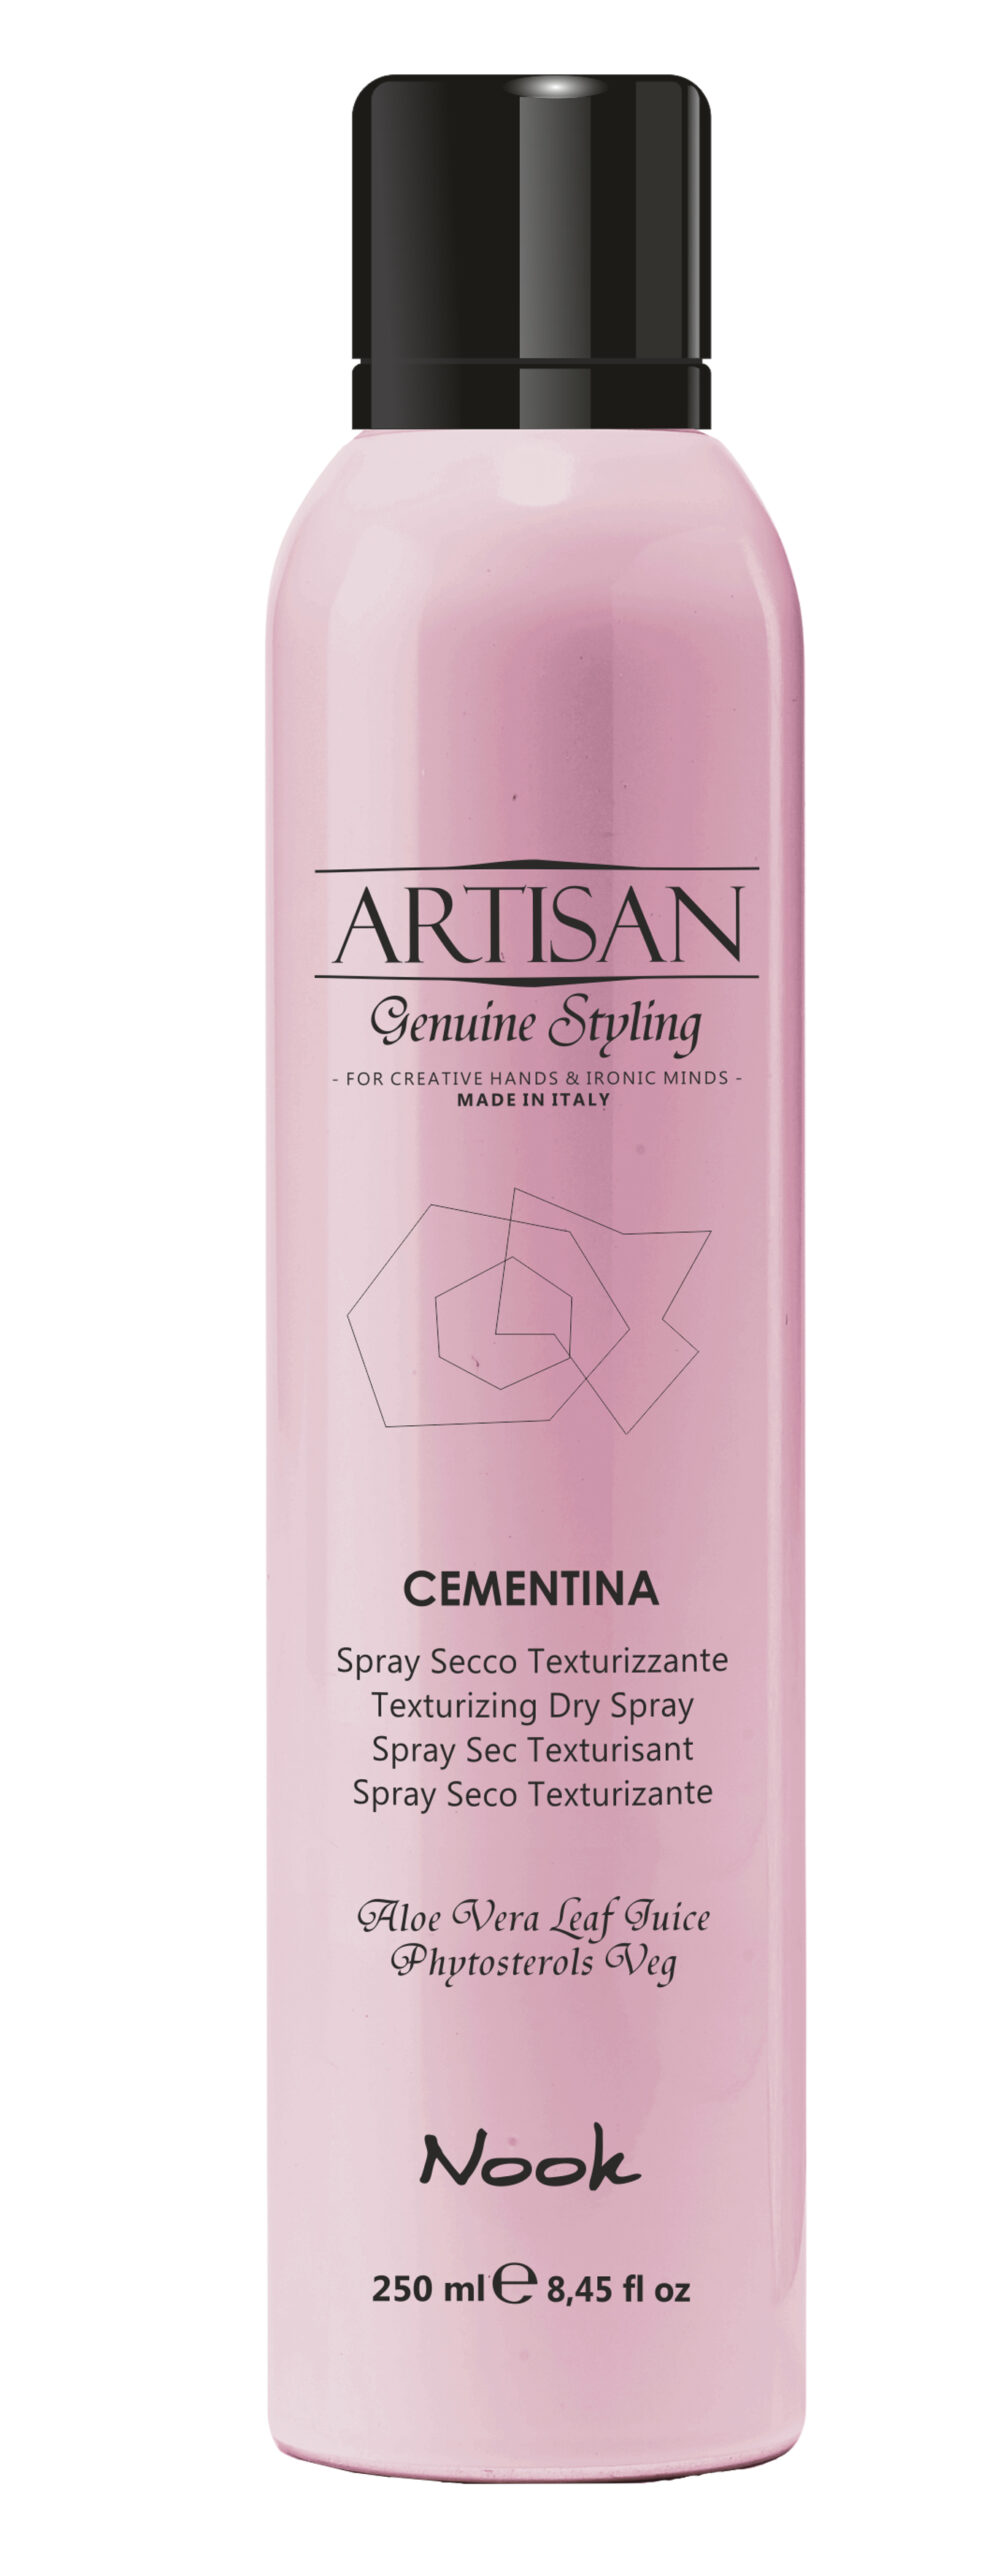 NOOK Artisan Cementina volumennövelő száraz spray 250ml